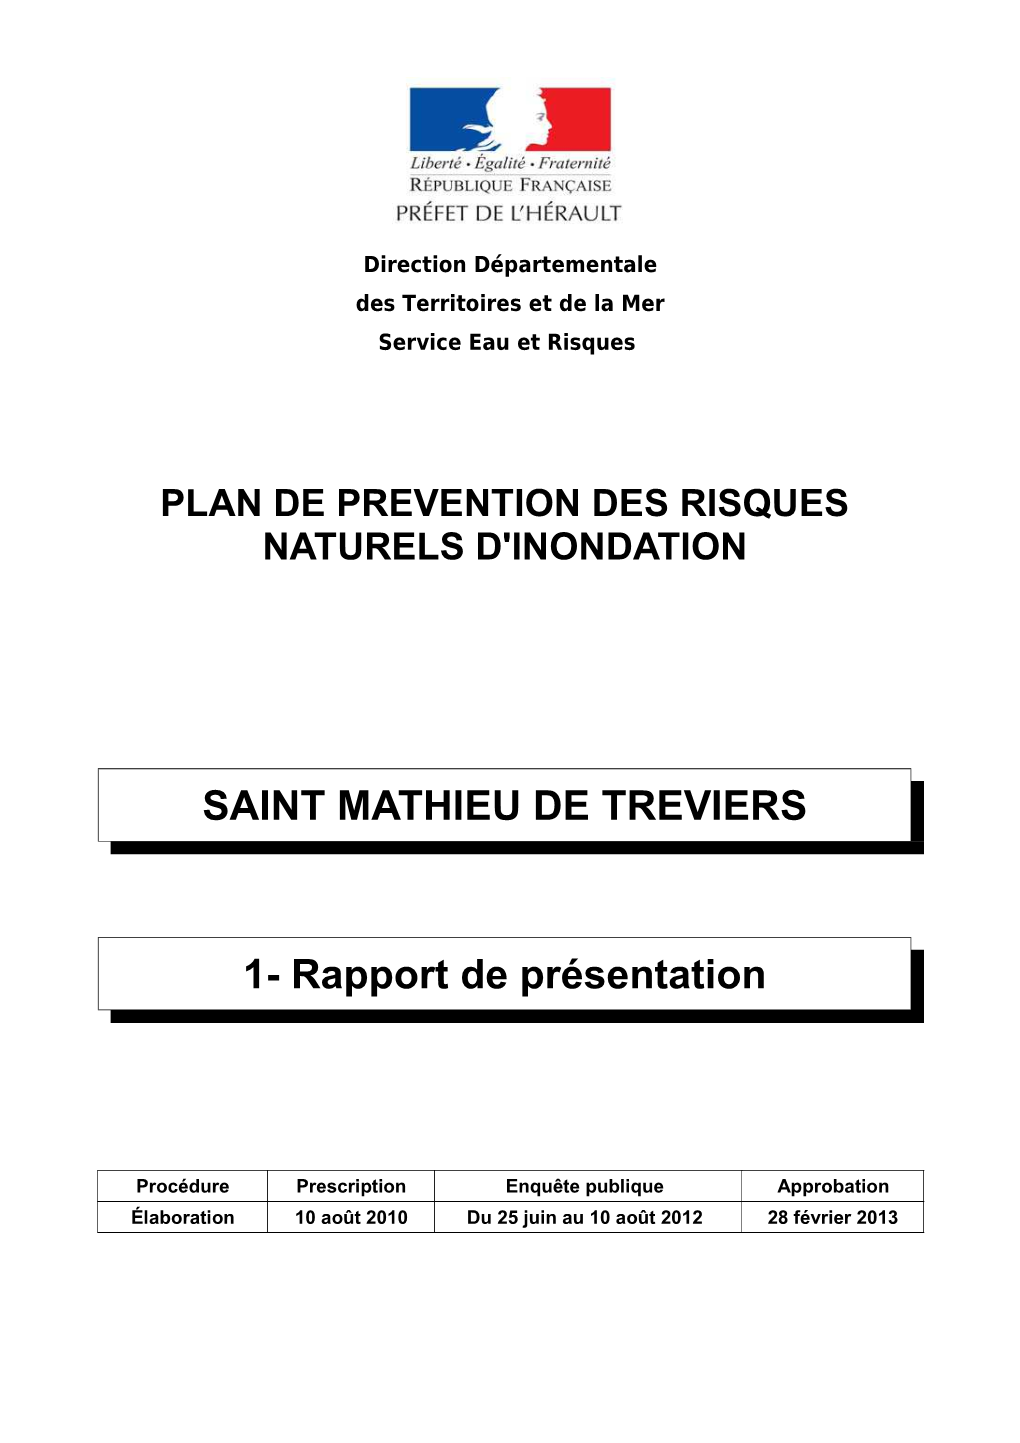 SAINT MATHIEU DE TREVIERS 1- Rapport De Présentation